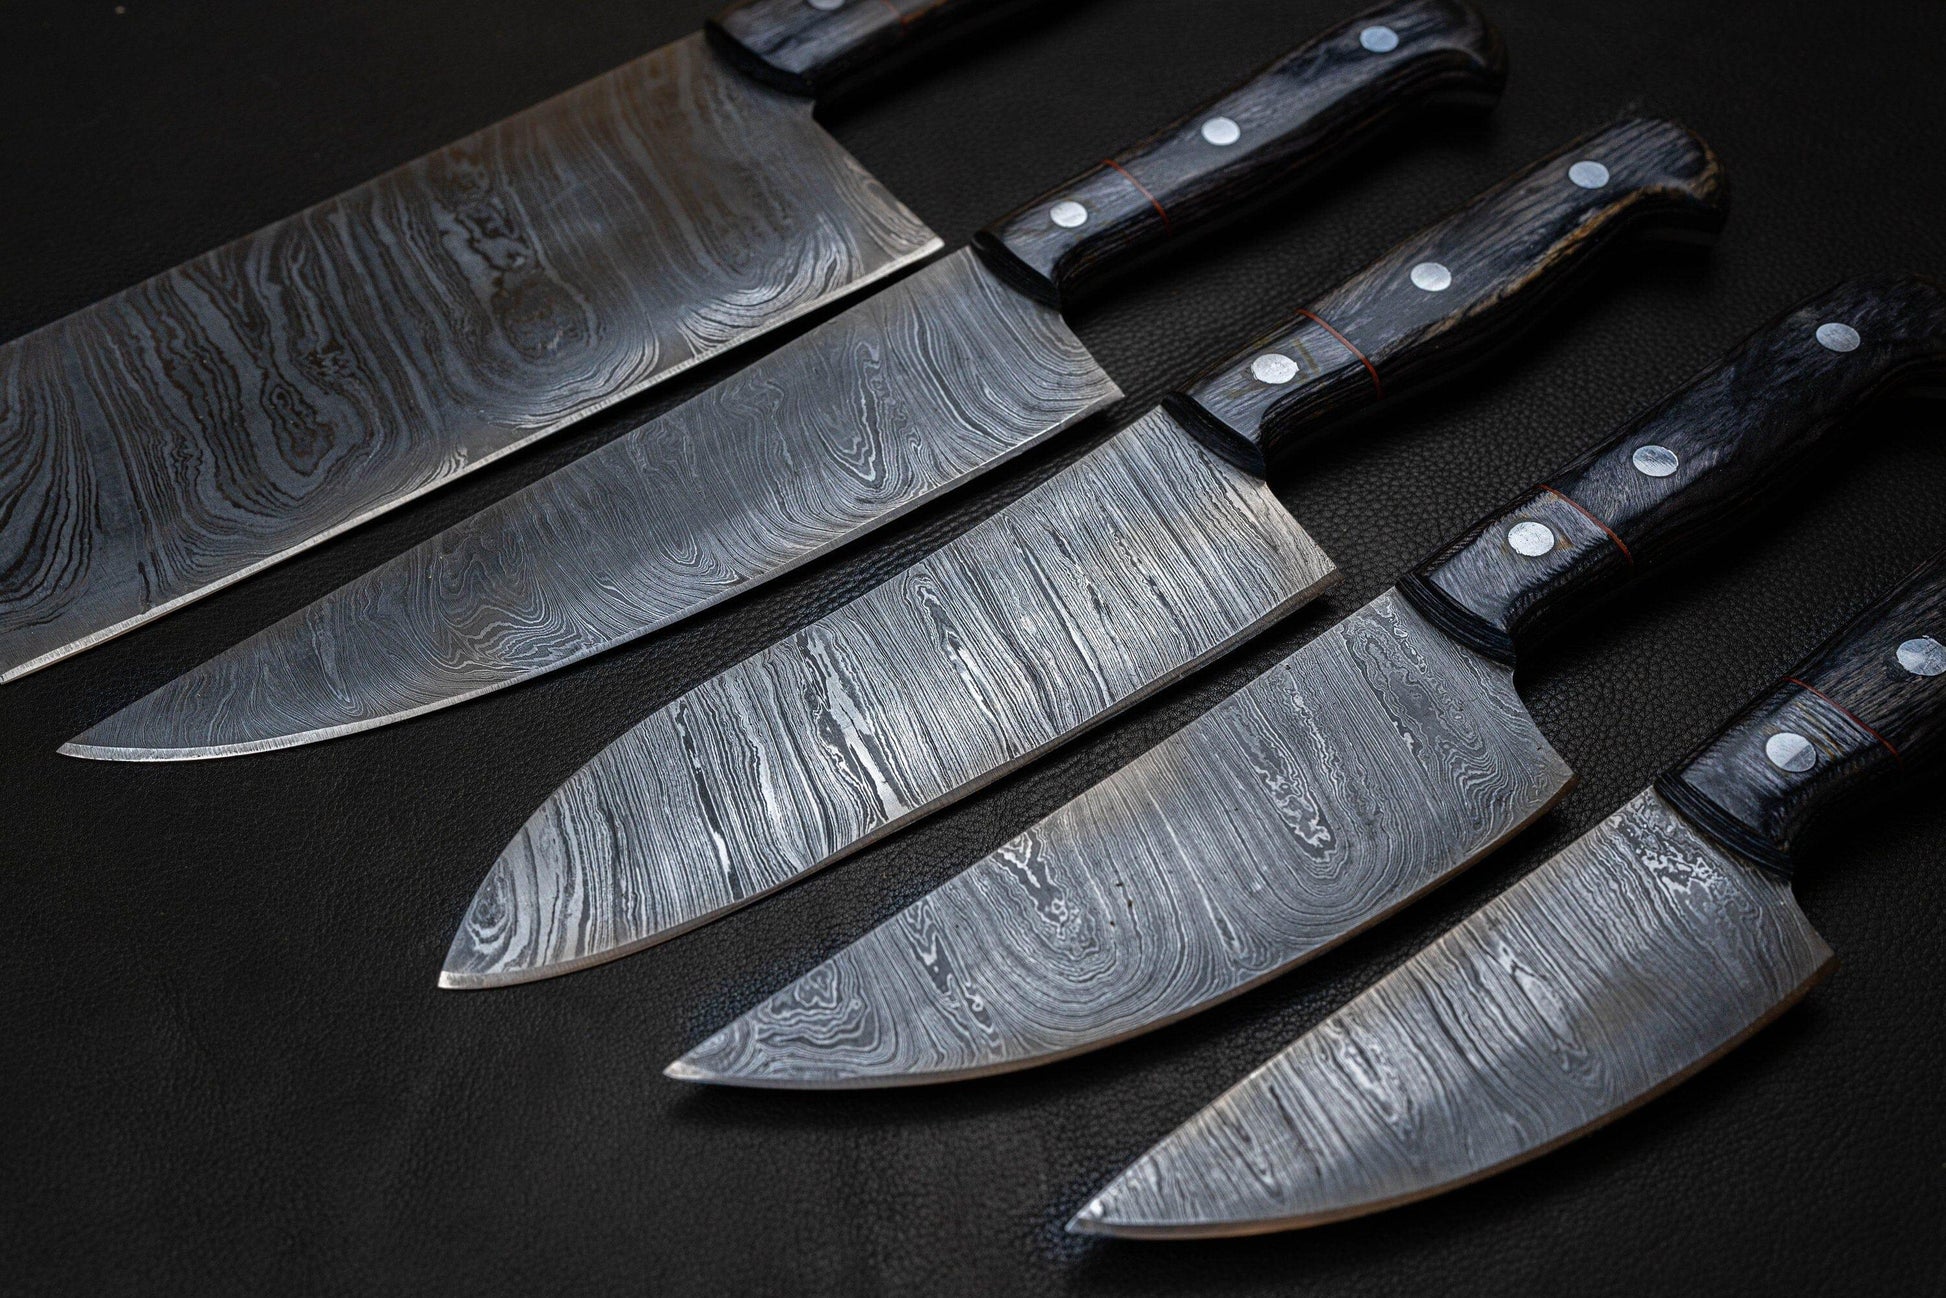 Damascus knife set of 5 pcs with Leather Kit